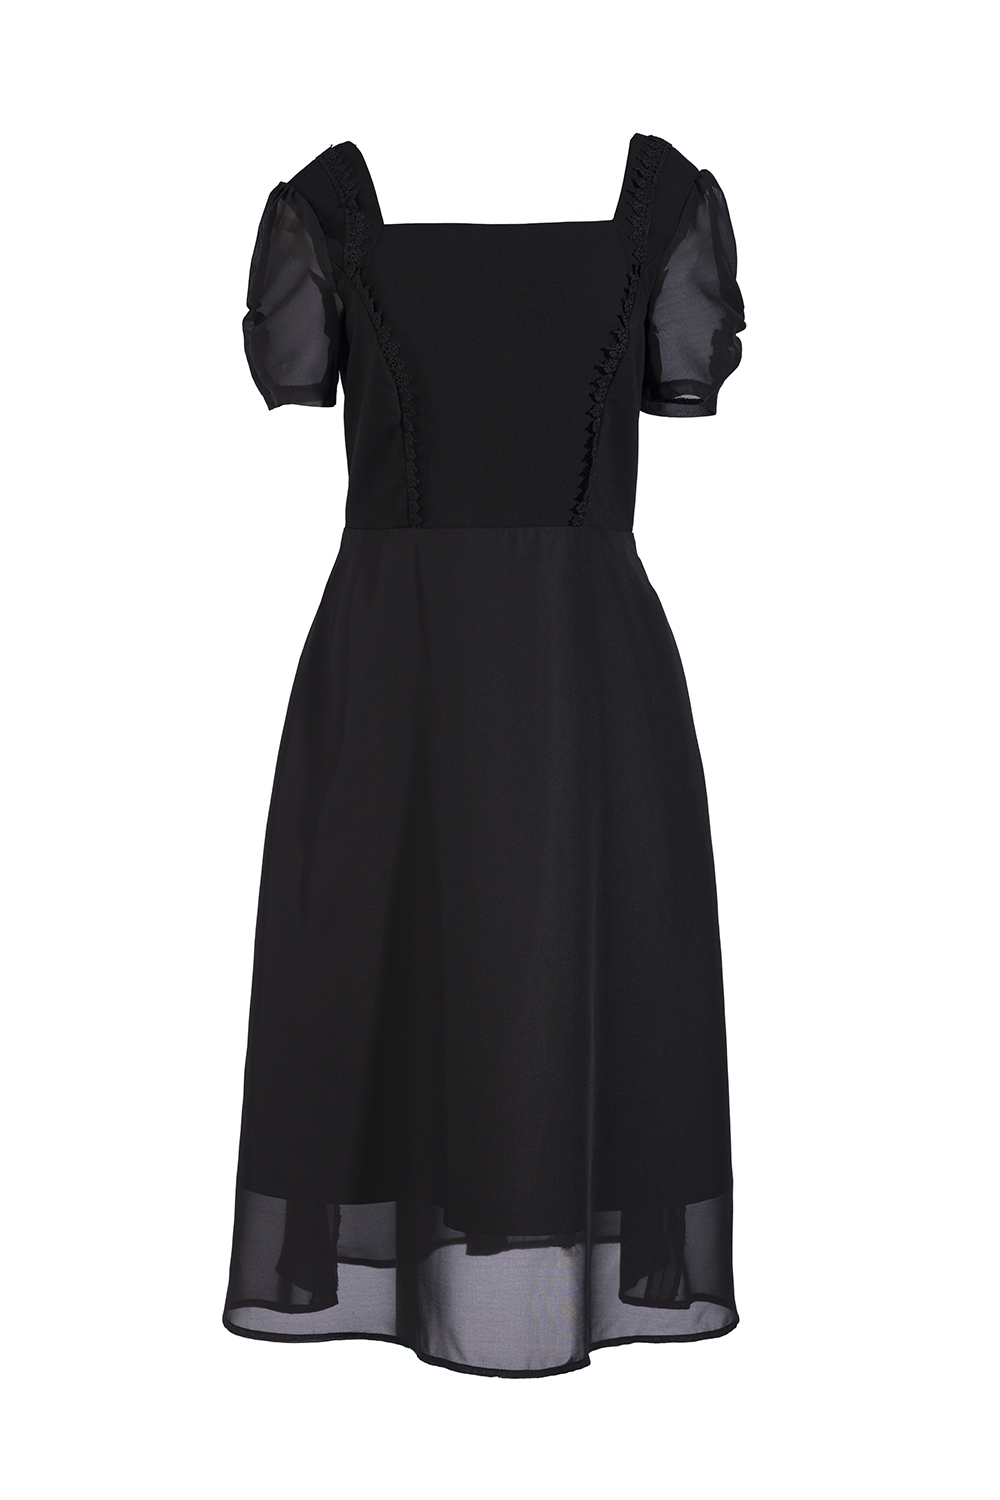 Đầm voan xòe cổ vuông tay ngắn KK105-32 | Thời trang công sở K&K ...